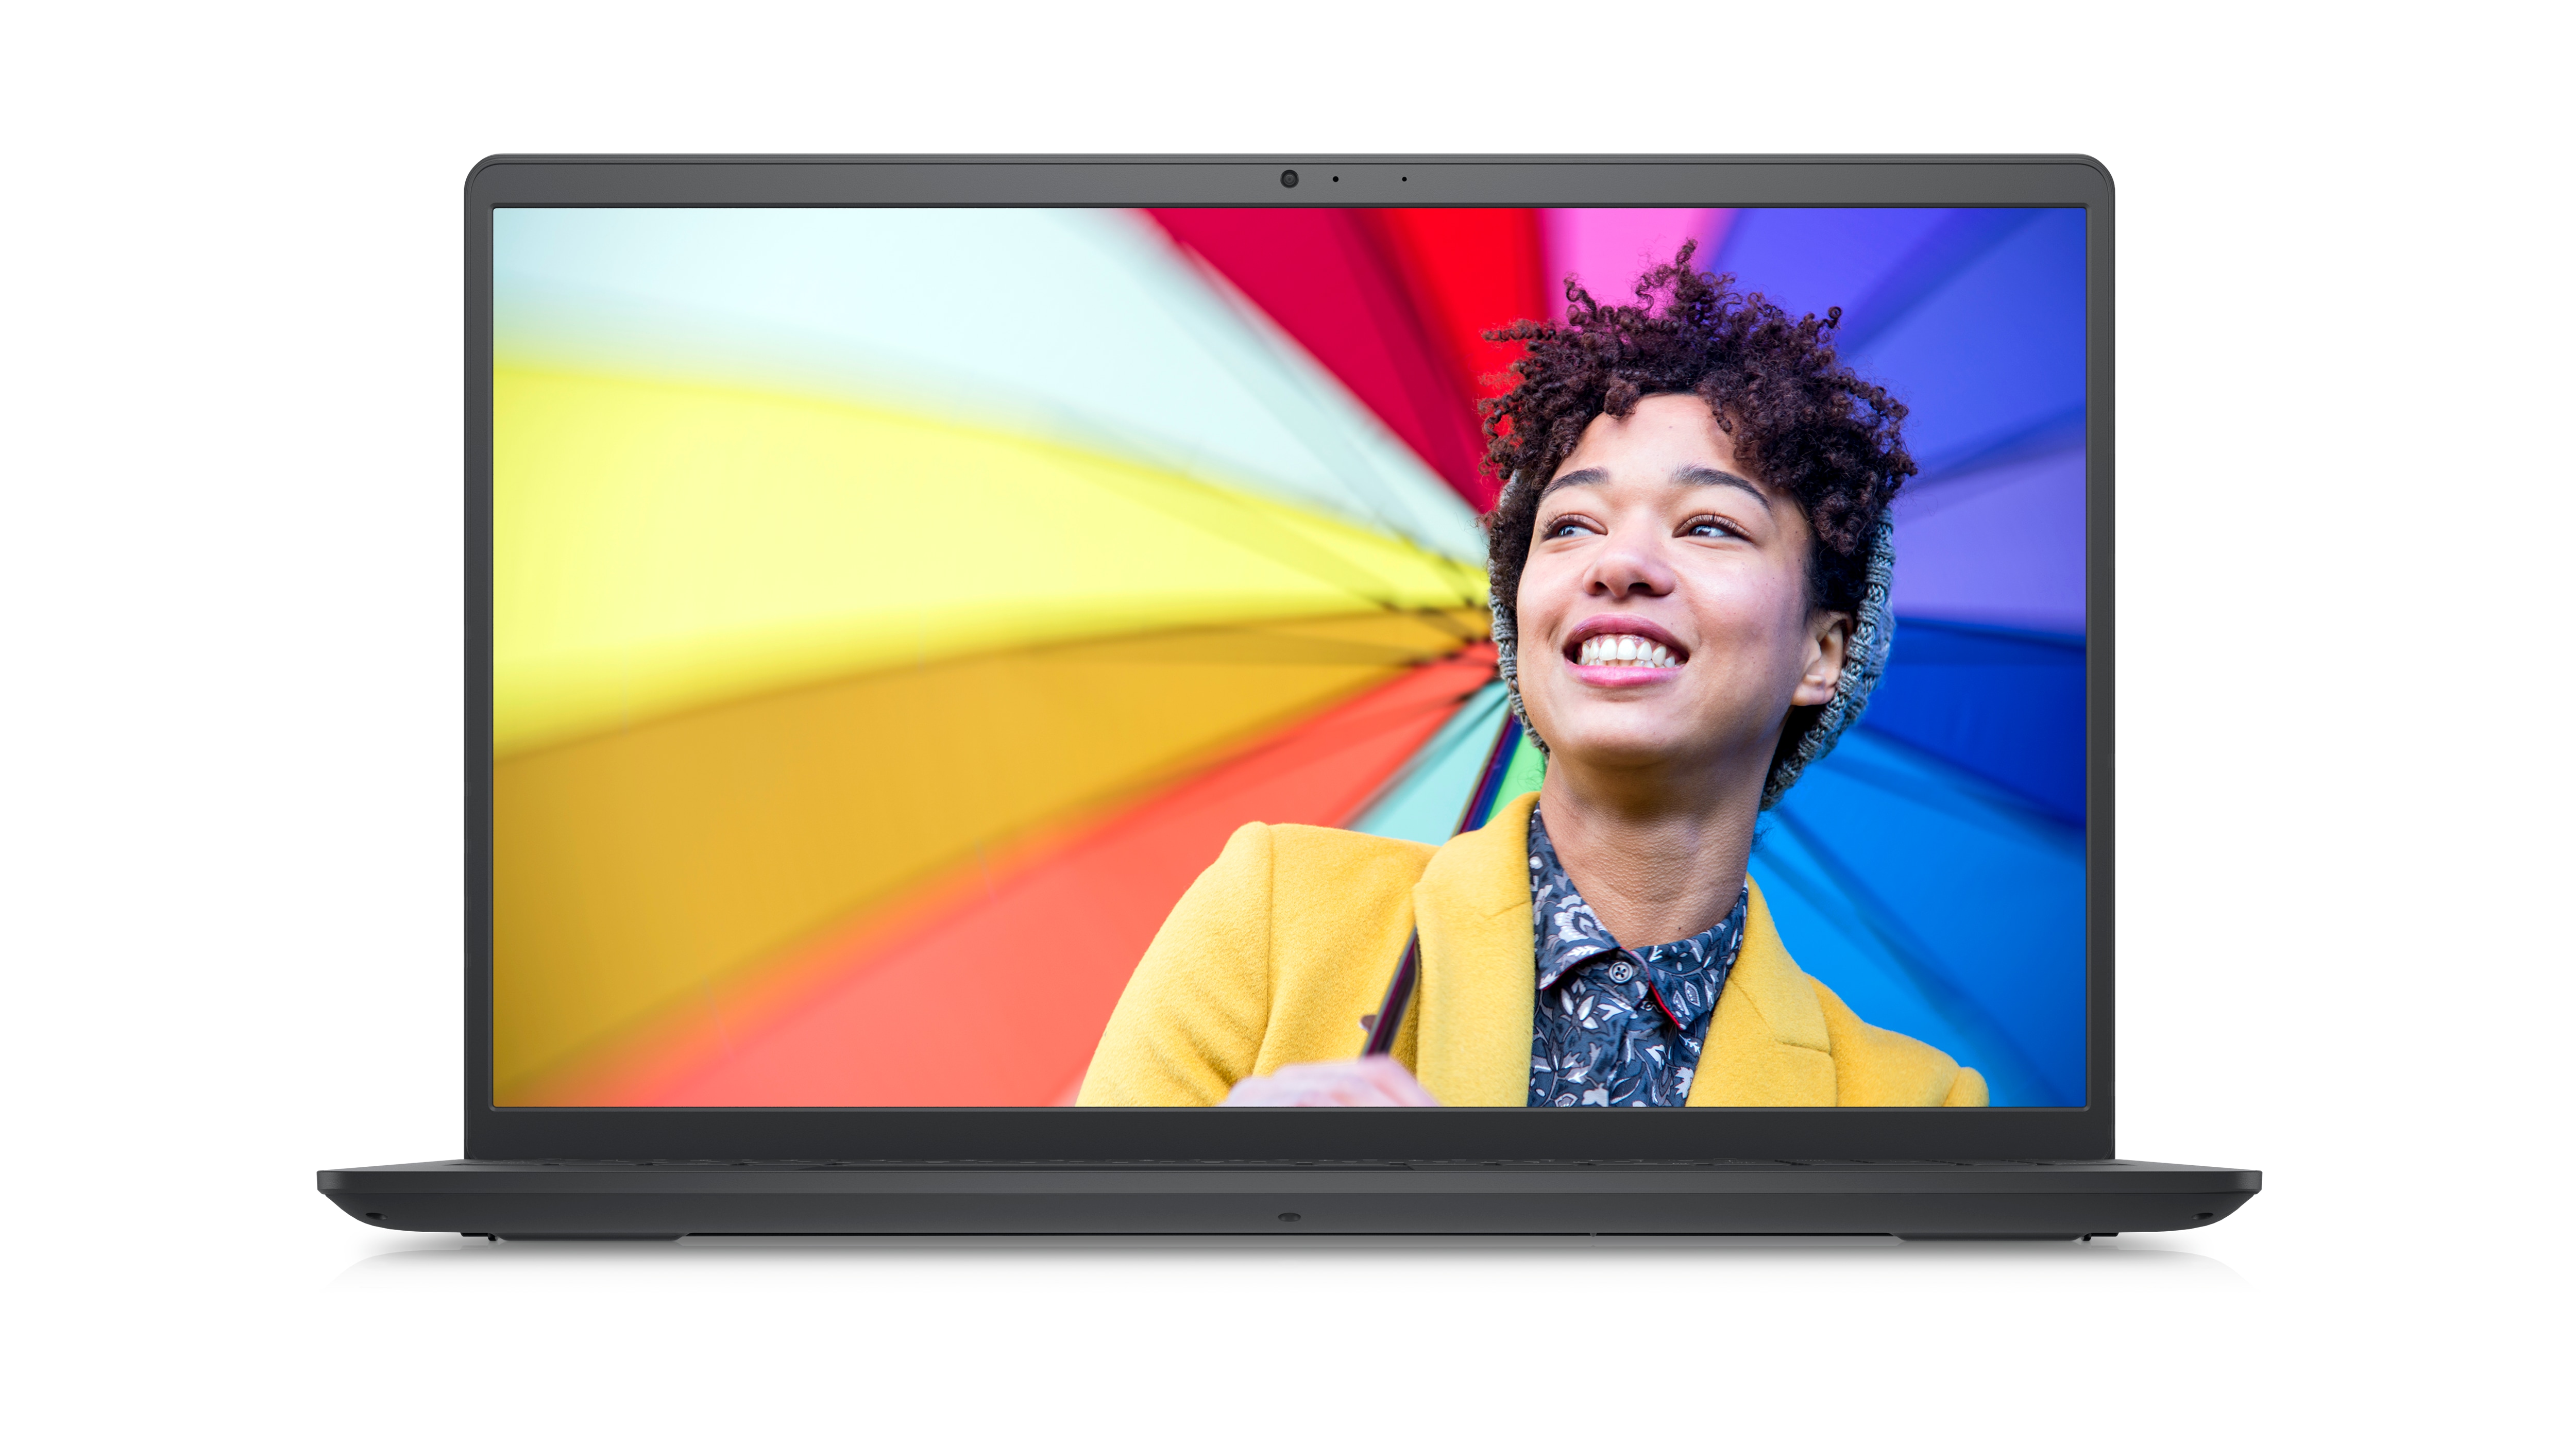 カラフルな背景の画面に黄色のブレザーを着て笑っている女性が映っているDell Inspiron 15インチ3525ノートパソコンの写真。